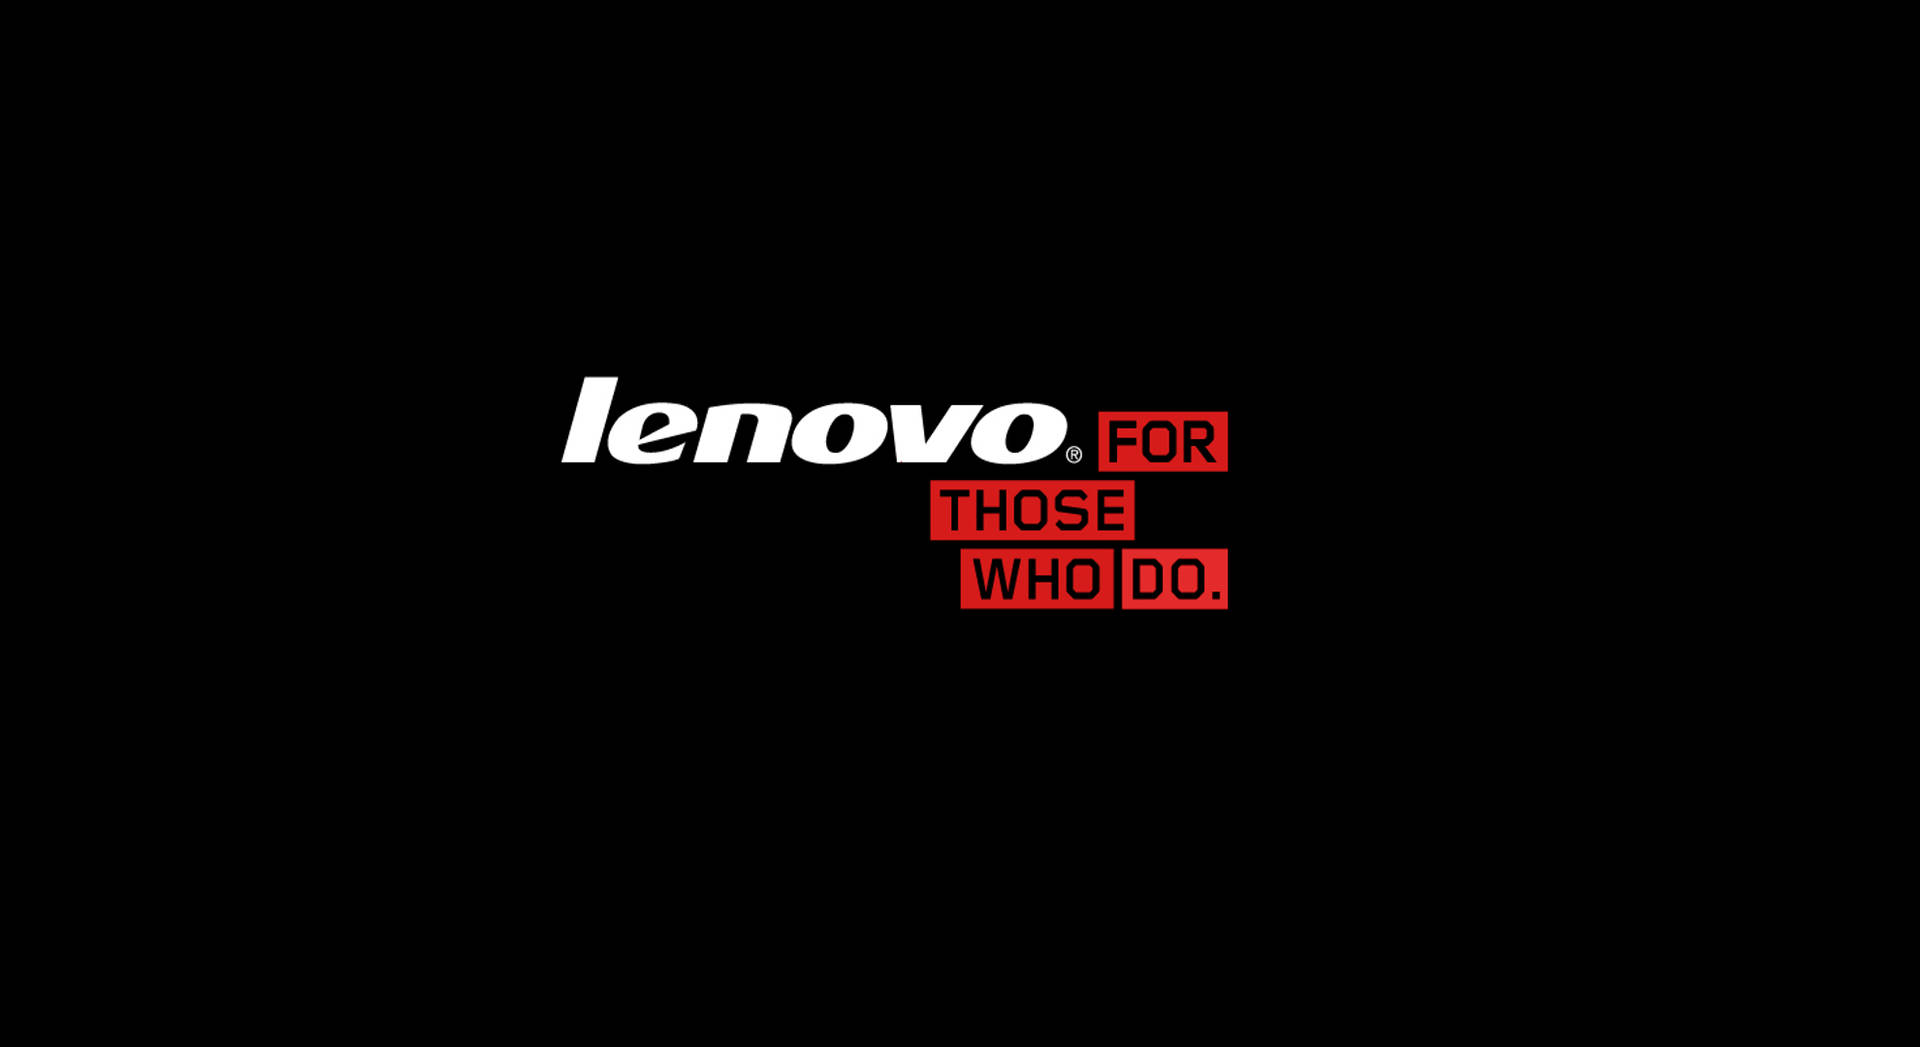 Negropara Aquellos Que Tienen Lenovo Hd. Fondo de pantalla